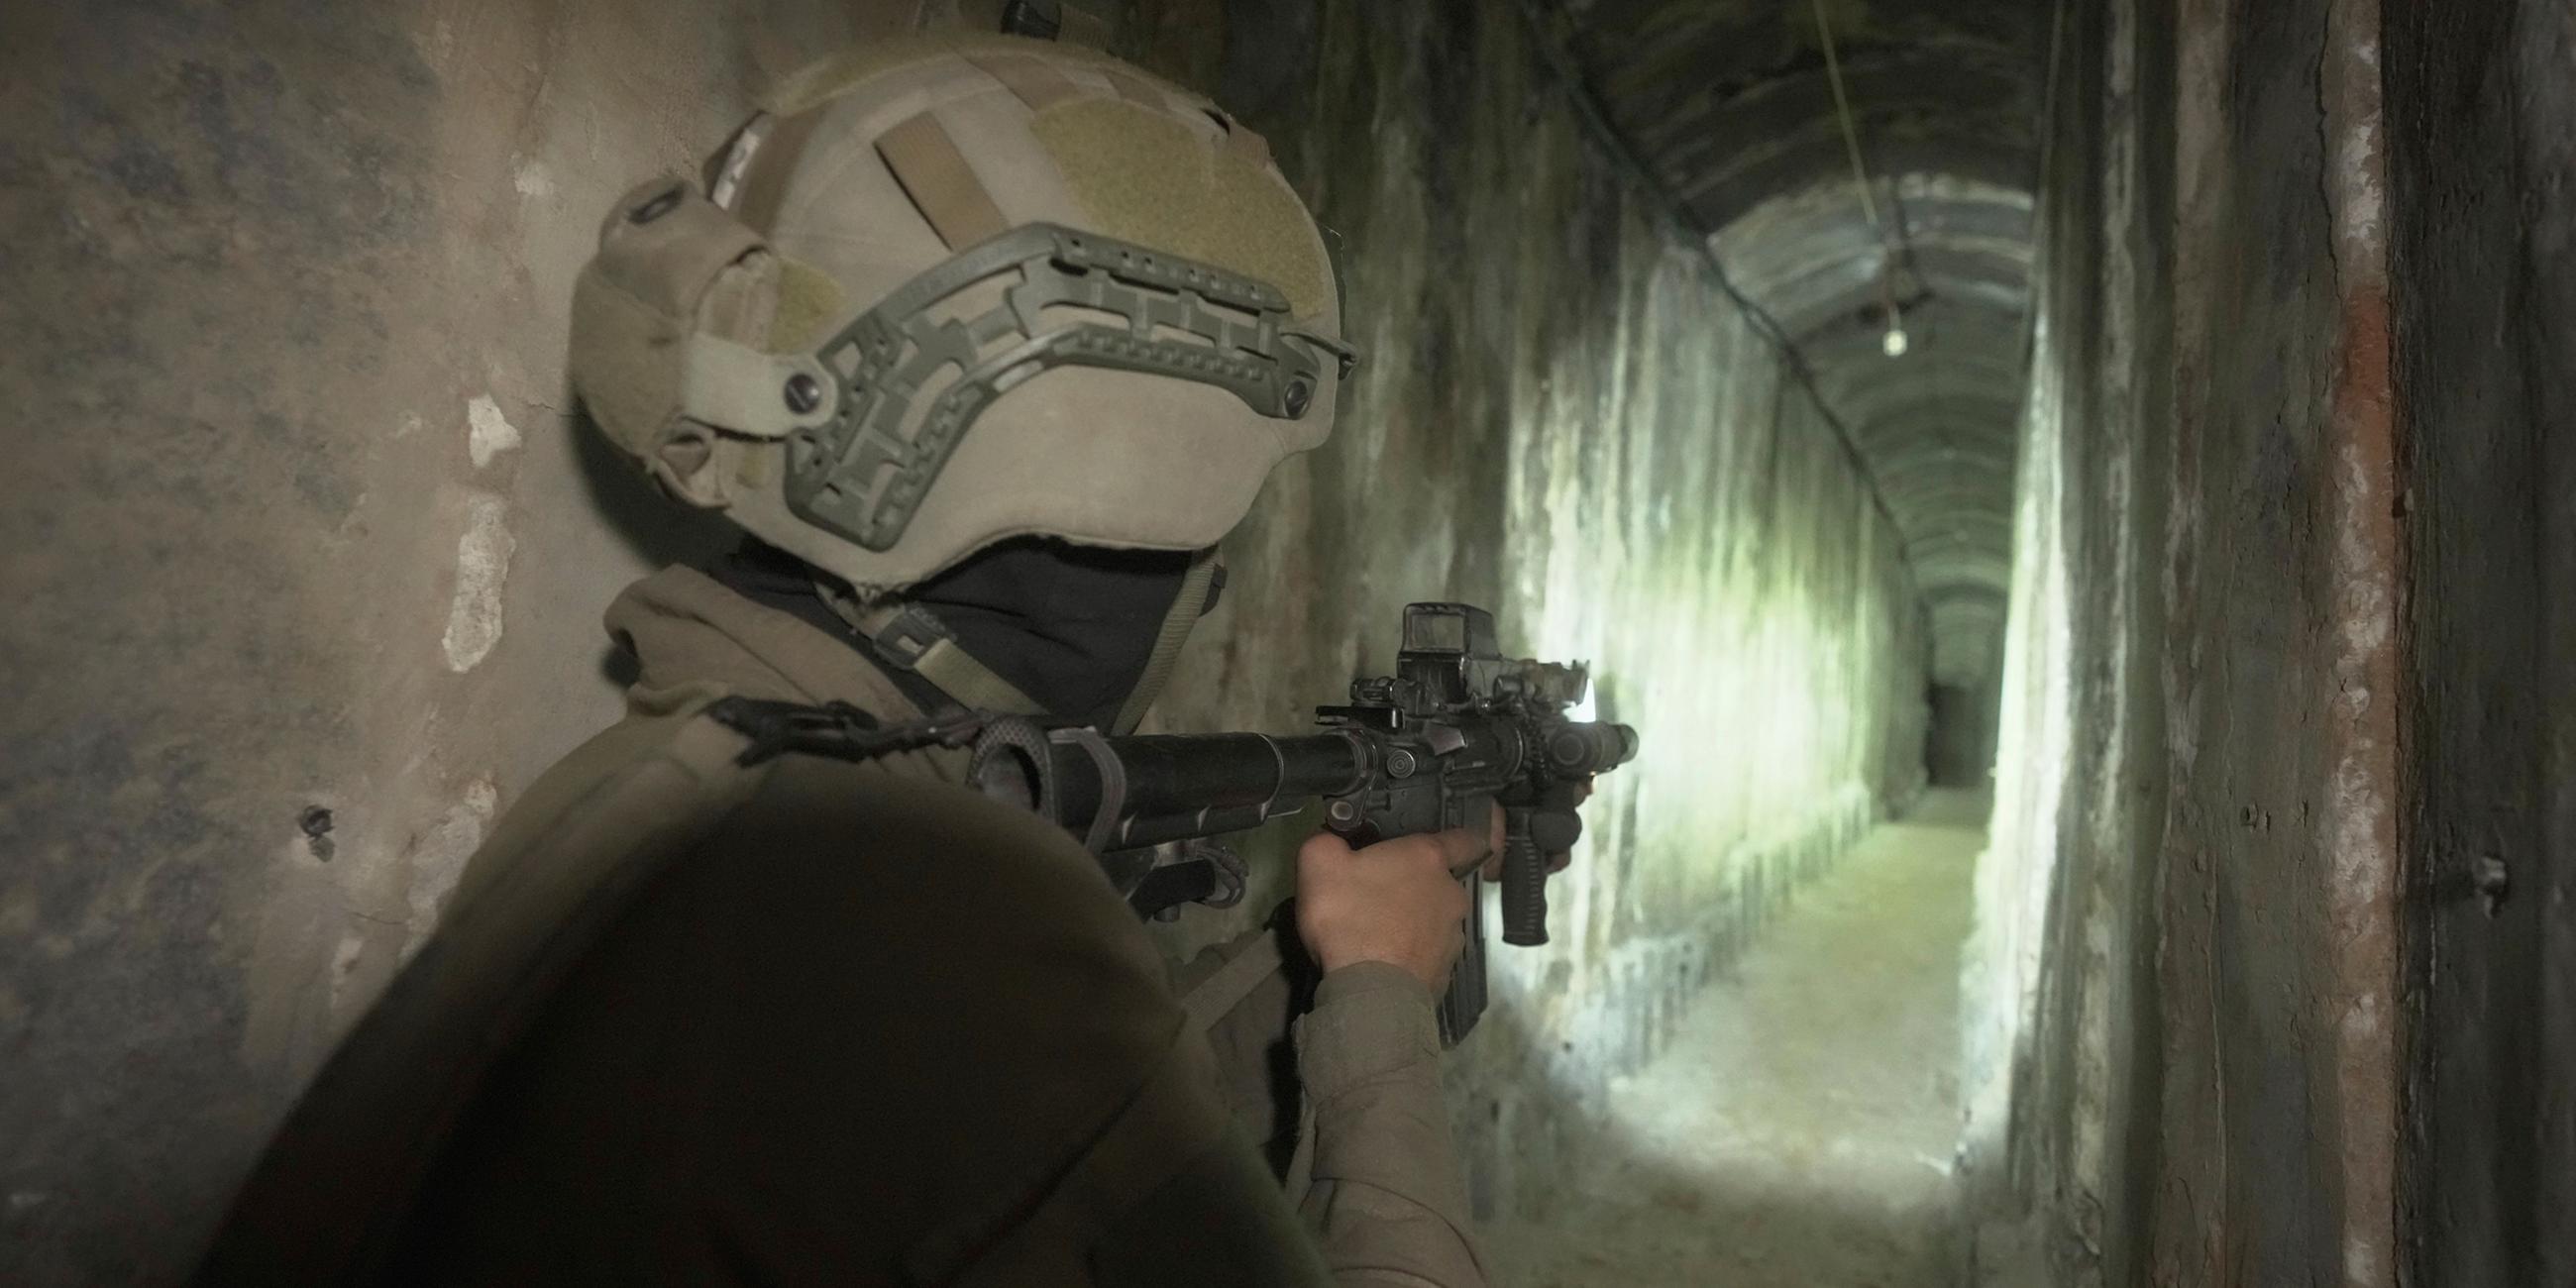 Archiv:  Israelische Soldaten zeigen den Medien einen unterirdischen Tunnel, der unter dem Schifa-Krankenhaus in Gaza-Stadt gefunden wurde. 